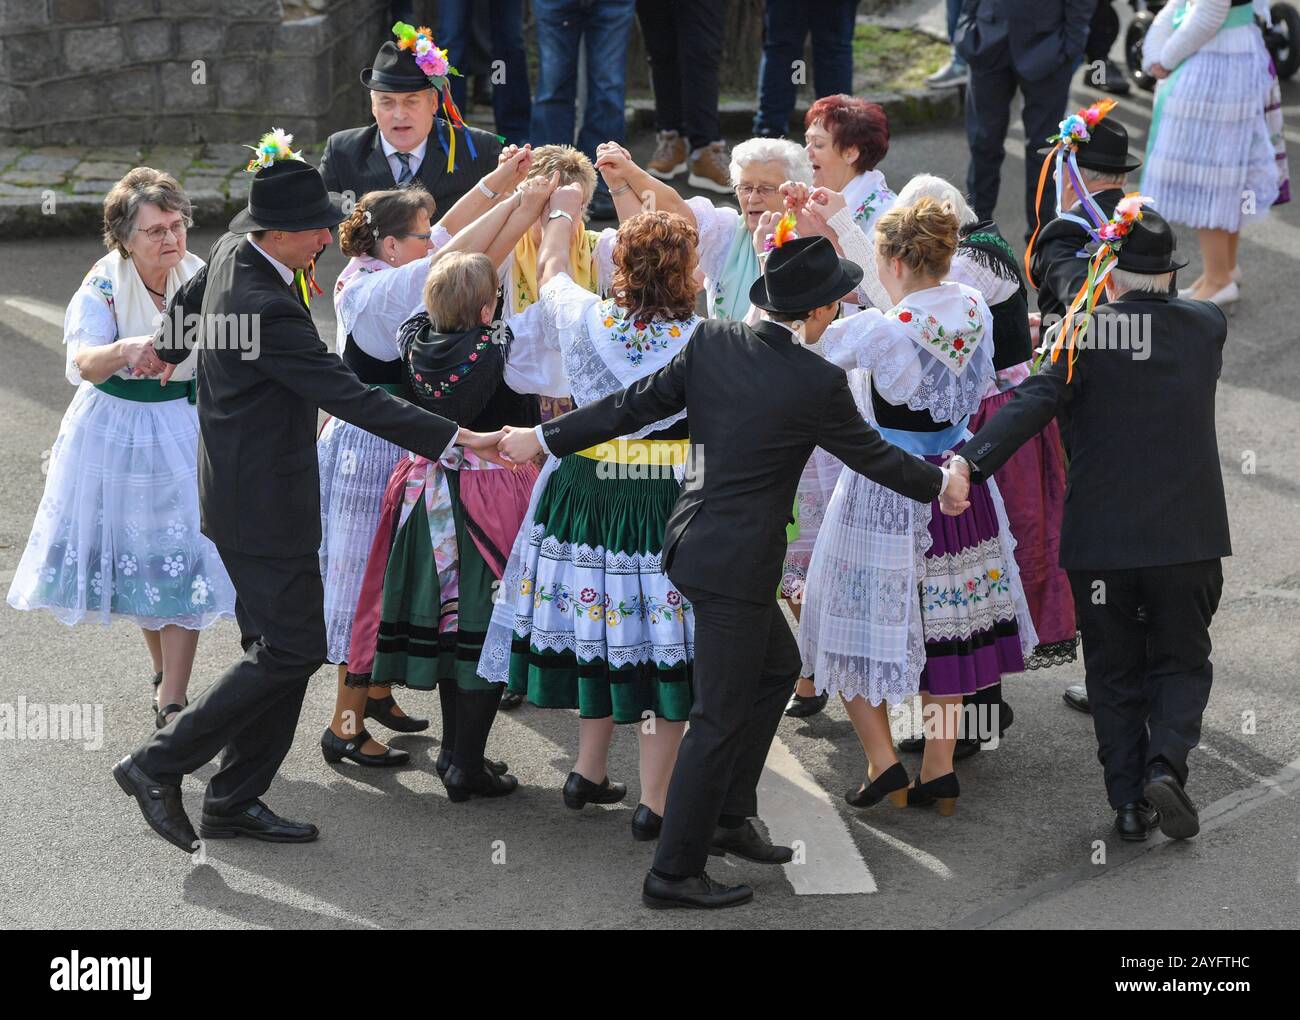 15 de febrero de 2020, Brandeburgo, Neu Zauche: Las parejas en el original  Sorbian-Wendish trajes de fiesta bailan en una calle durante el tradicional  Zapost, el carnaval. 95 parejas casadas y 33